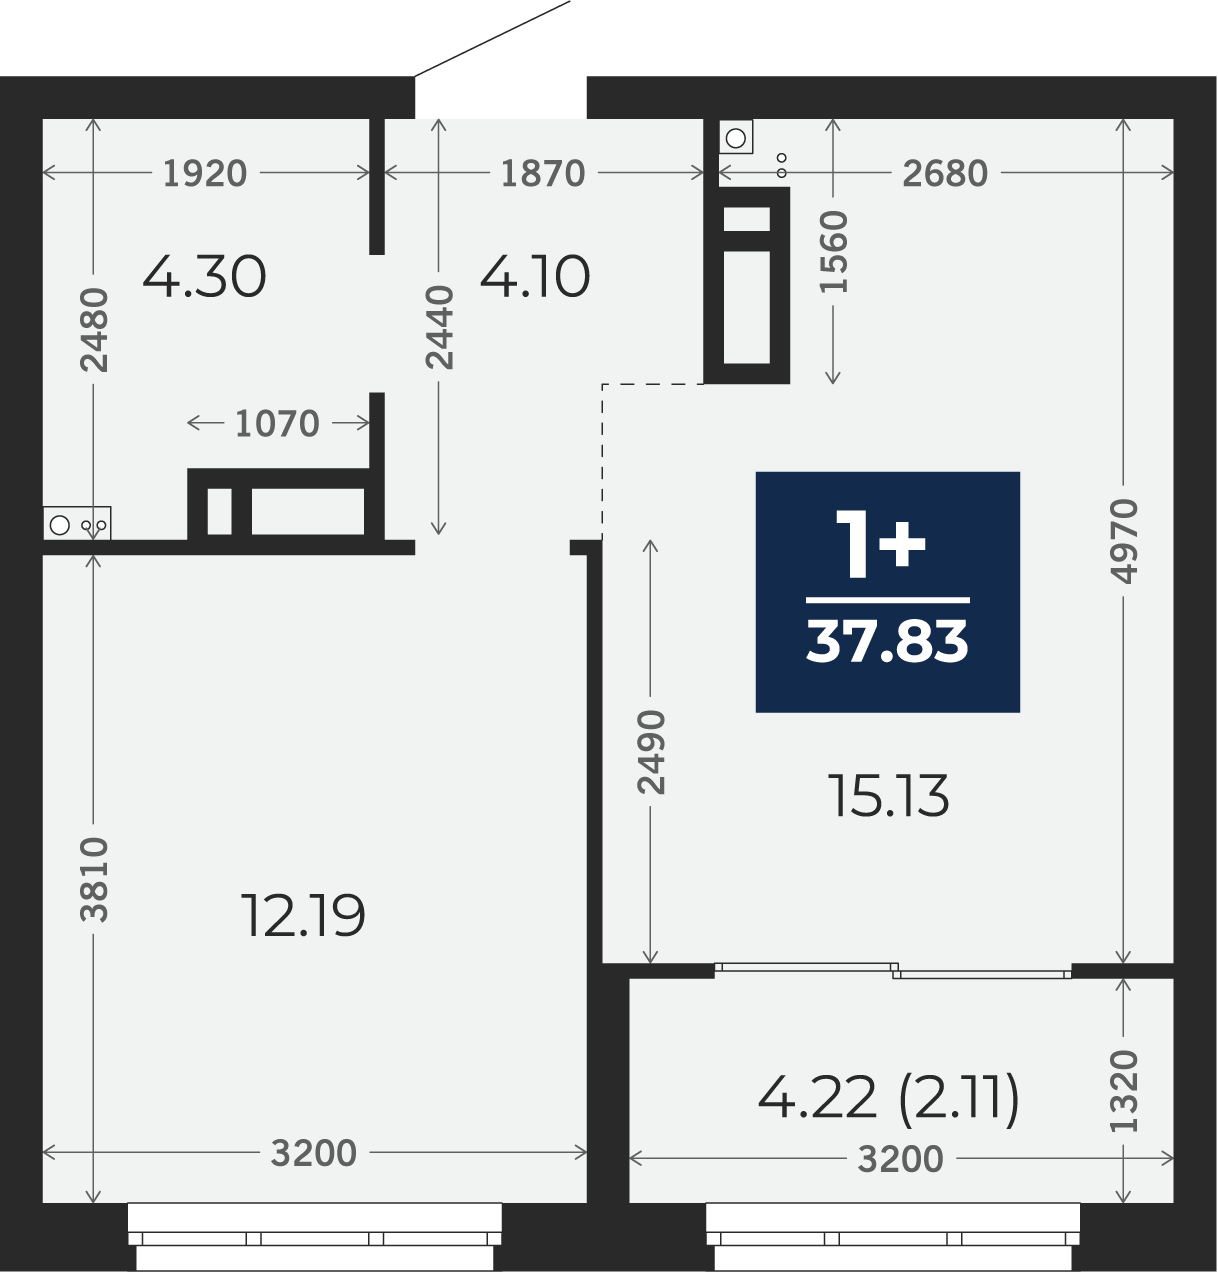 Квартира № 220, 1-комнатная, 37.83 кв. м, 3 этаж